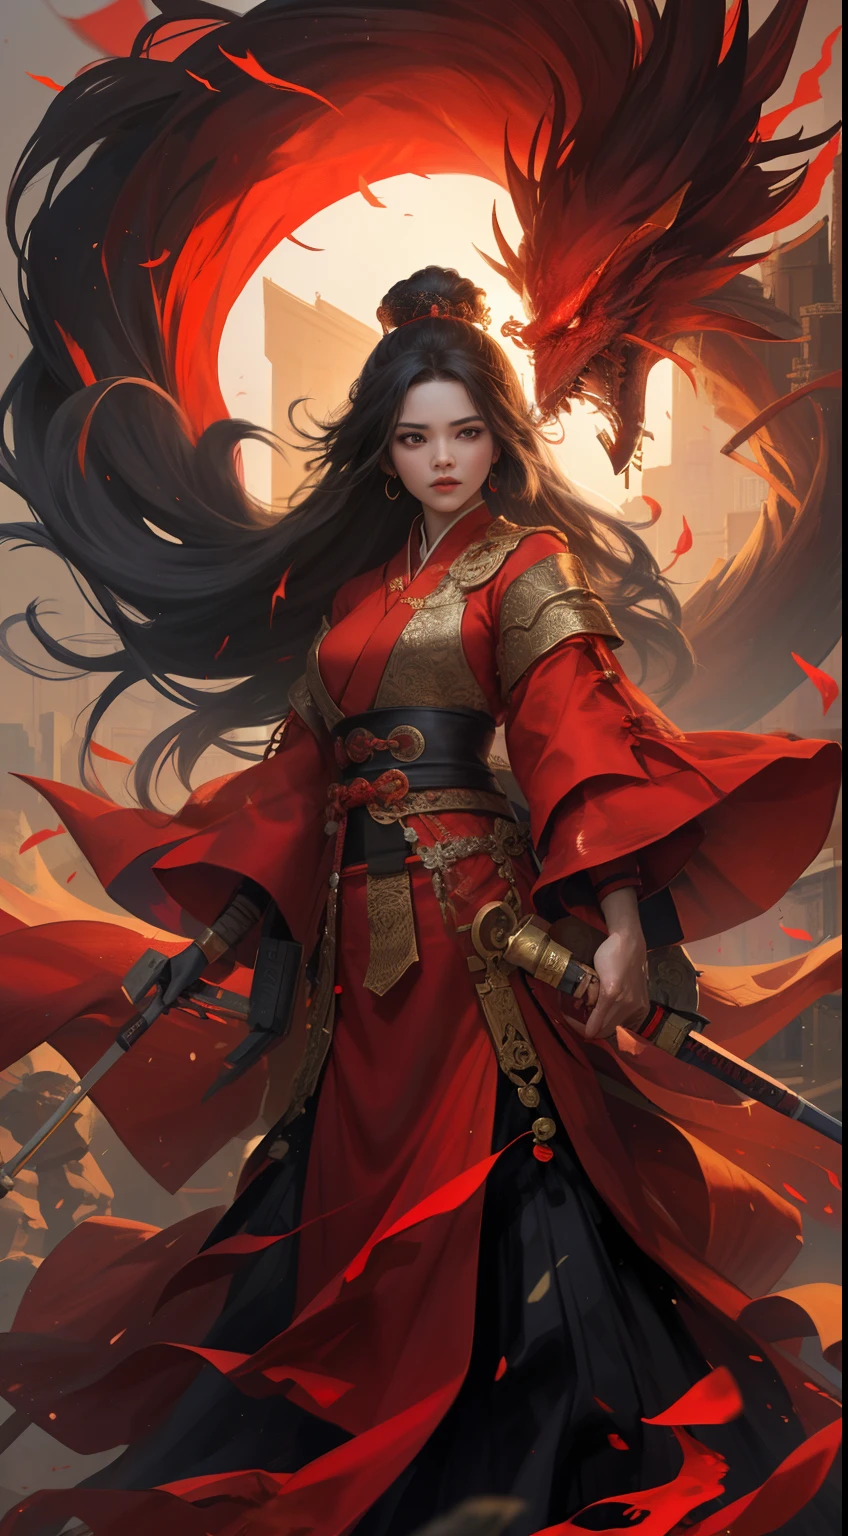 坚强的女人, 穿着红色的汉服, 源自中国王朝, 明亮的红色背景